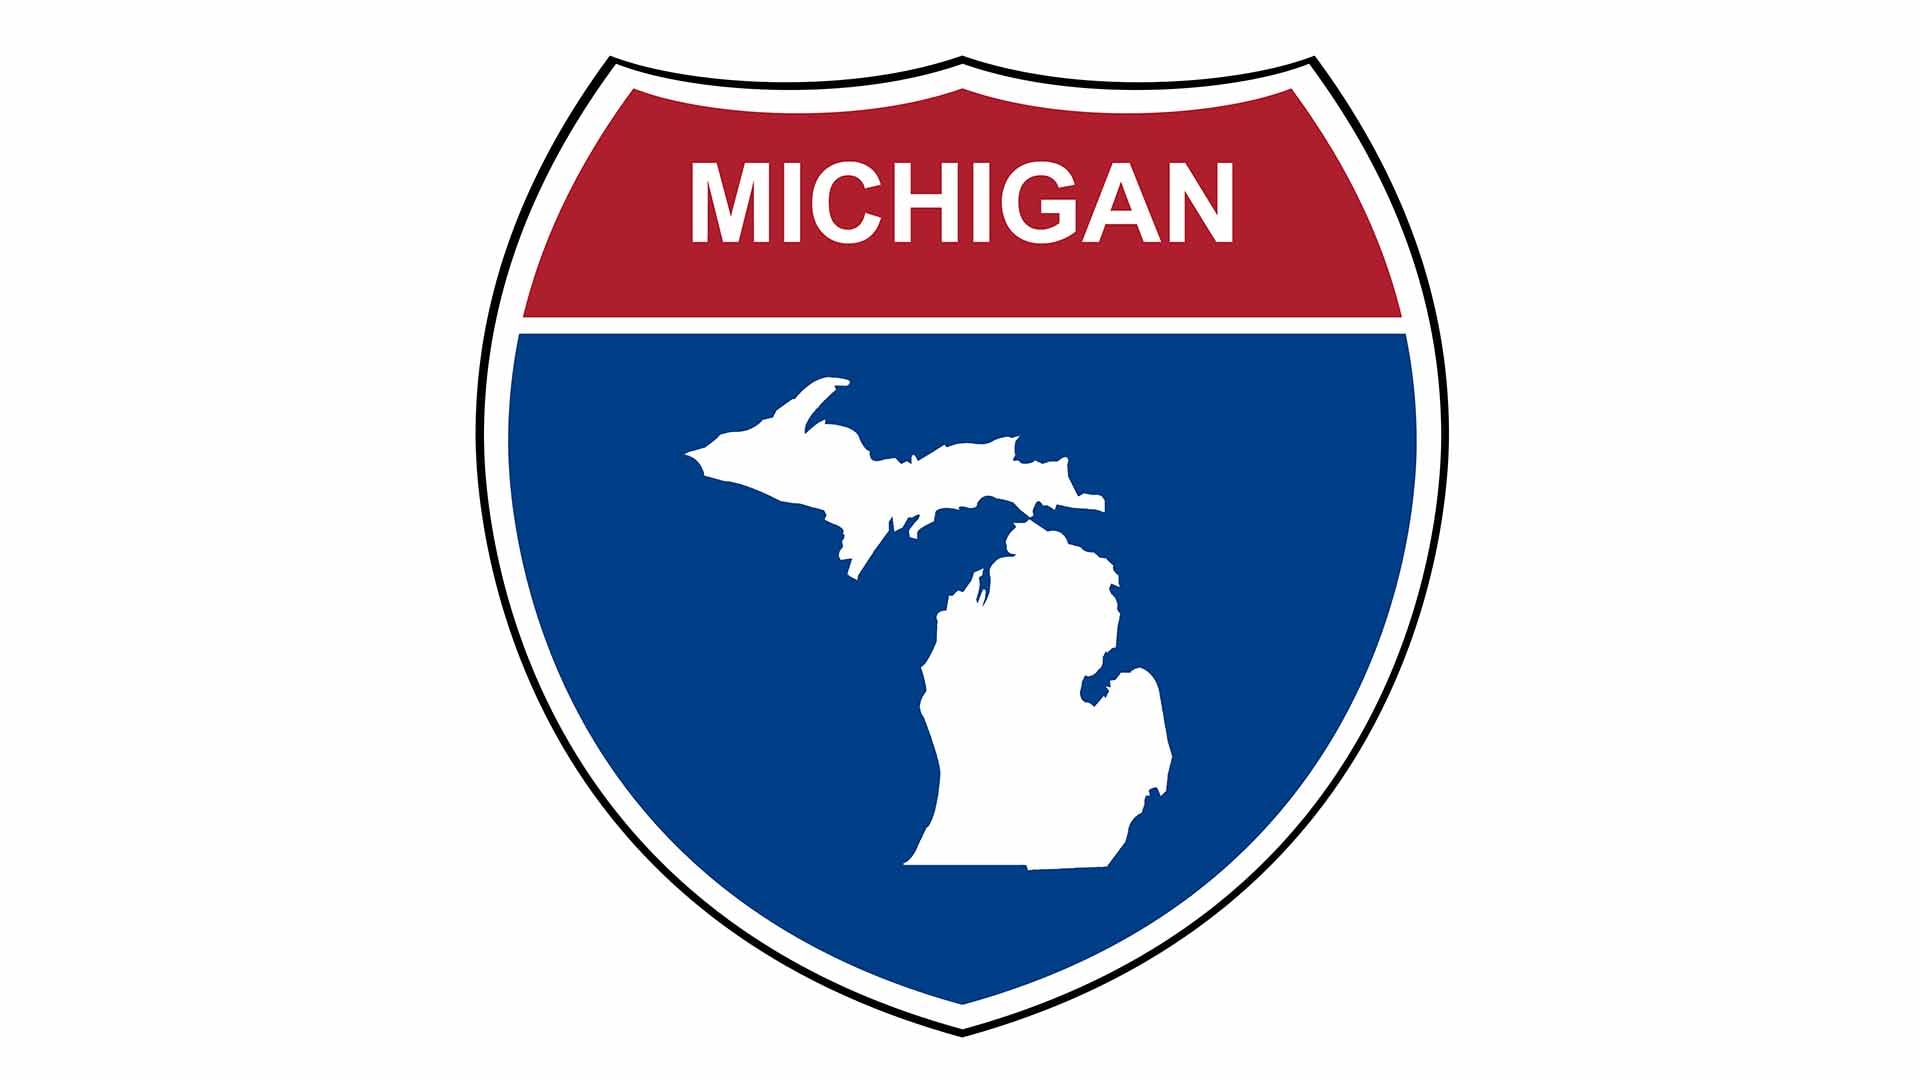 Michigan state roadside sign